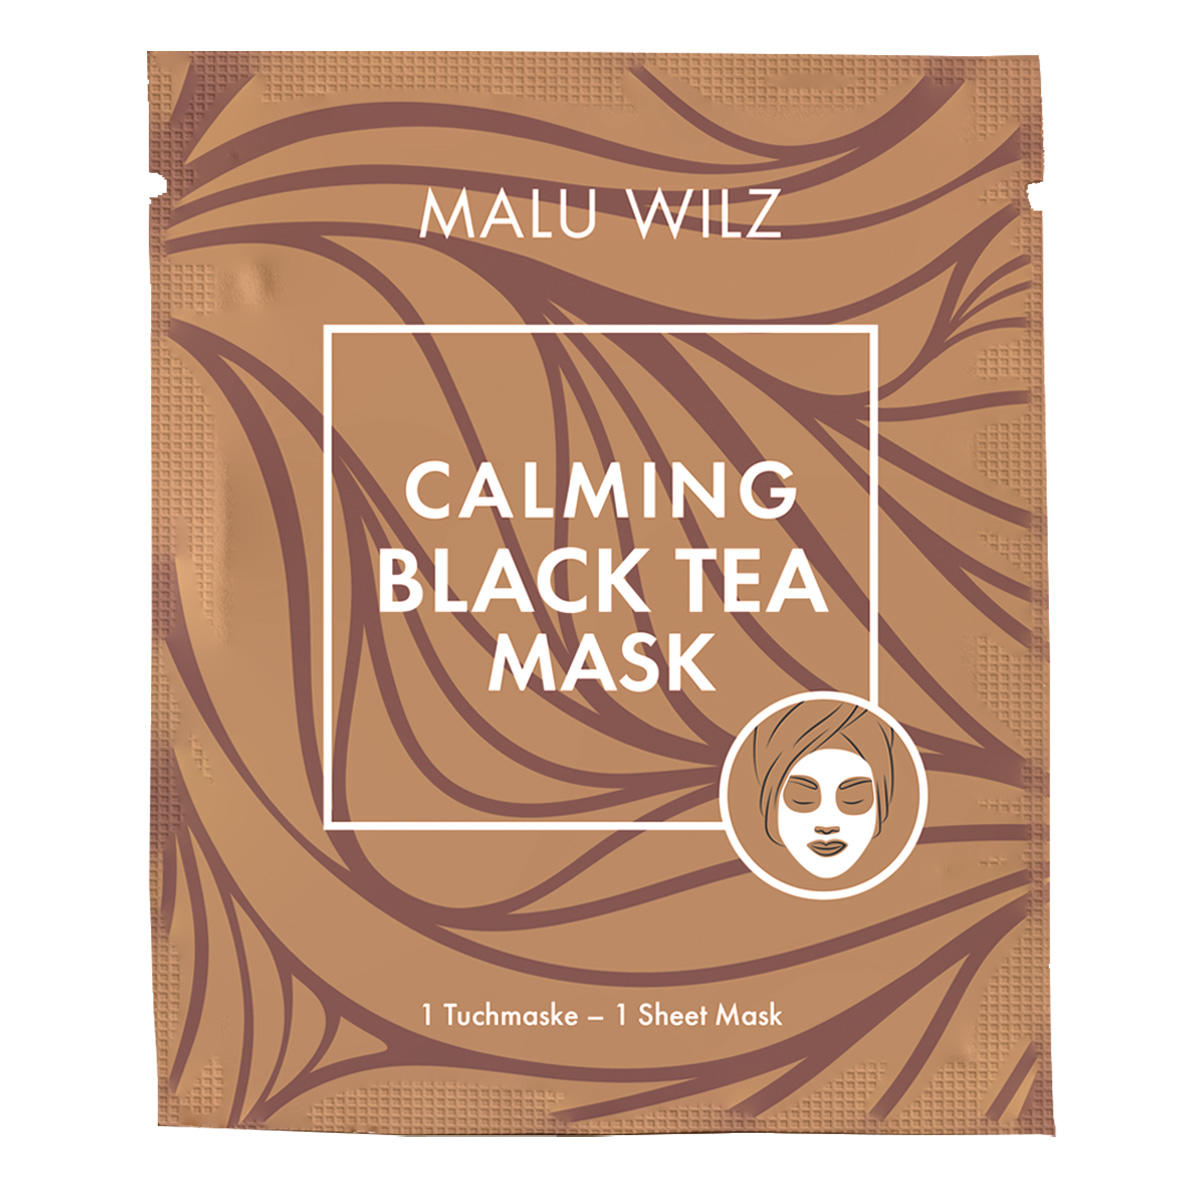 Malu Wilz Mascarilla calmante de té negro 1 Stück - 1